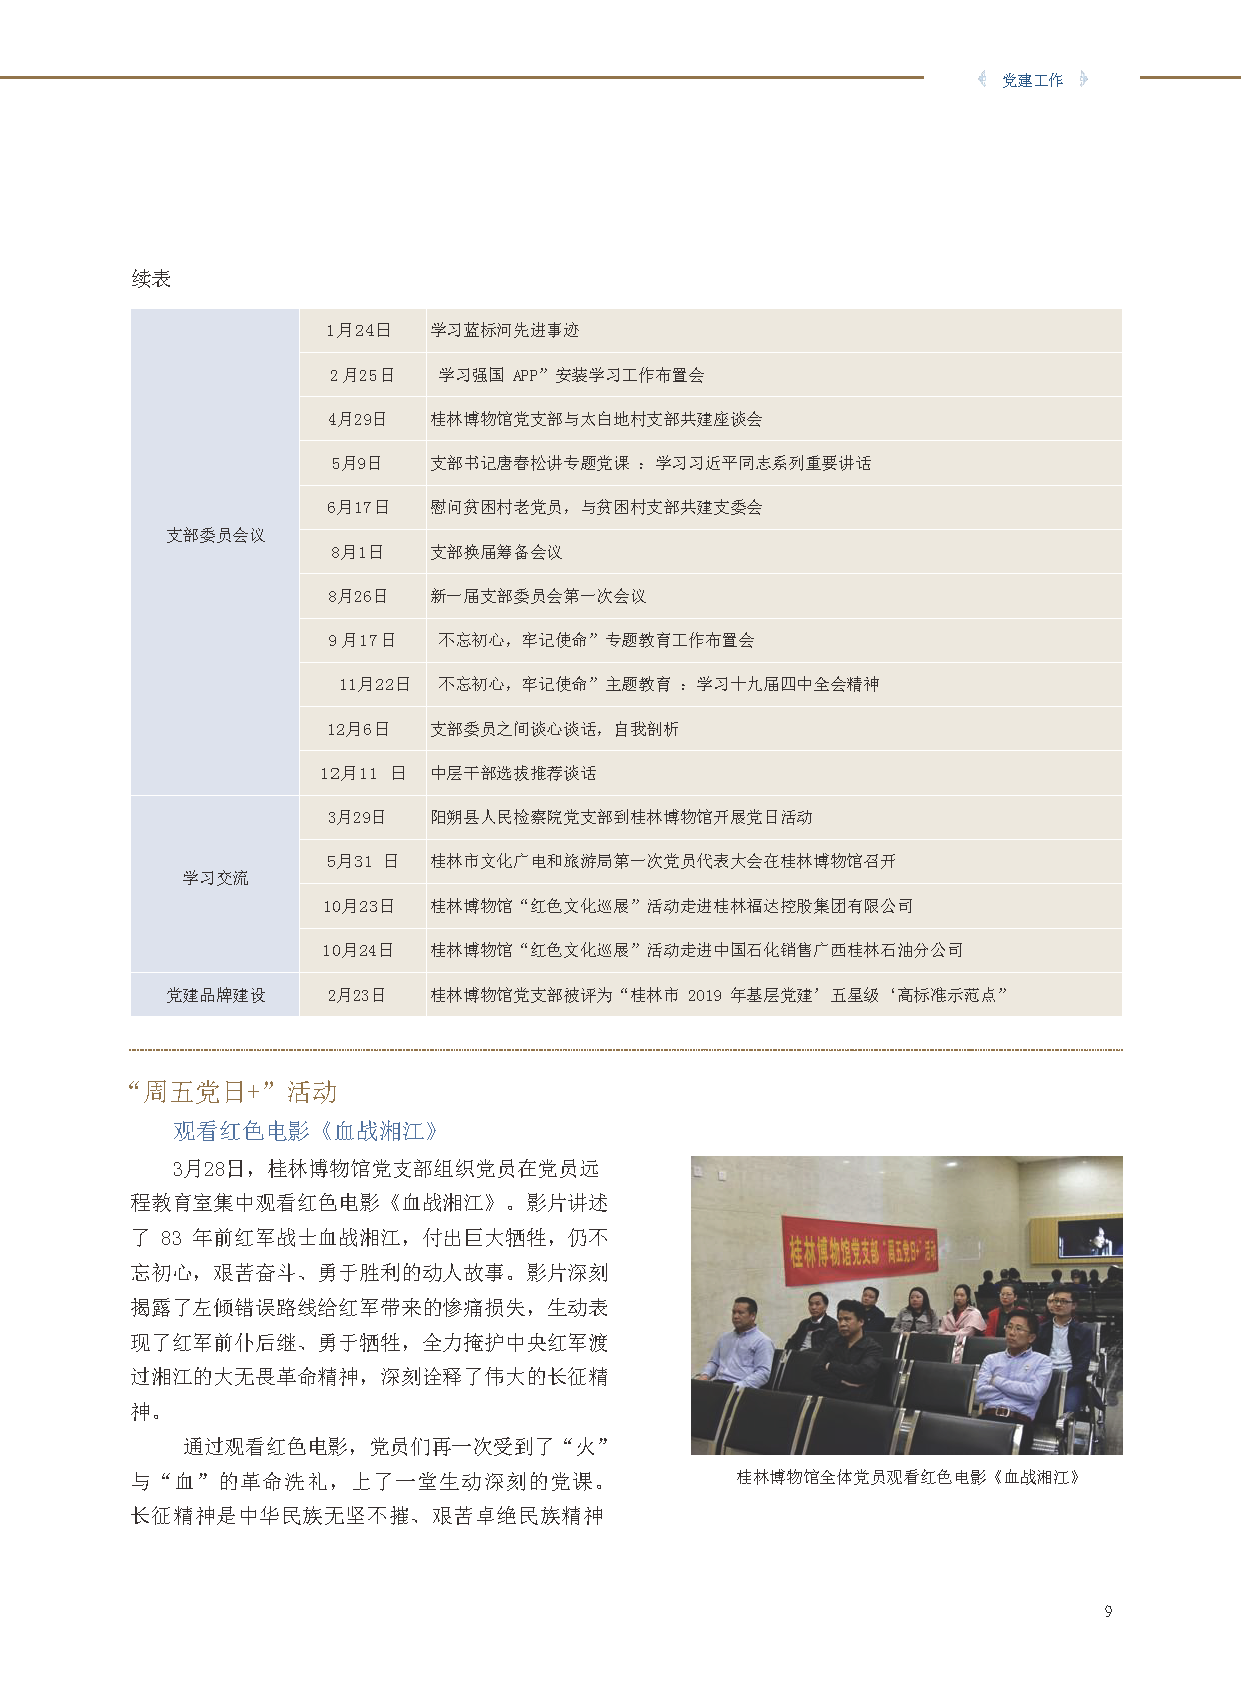 桂林博物馆2019年度报告.pdf_页面_011.png